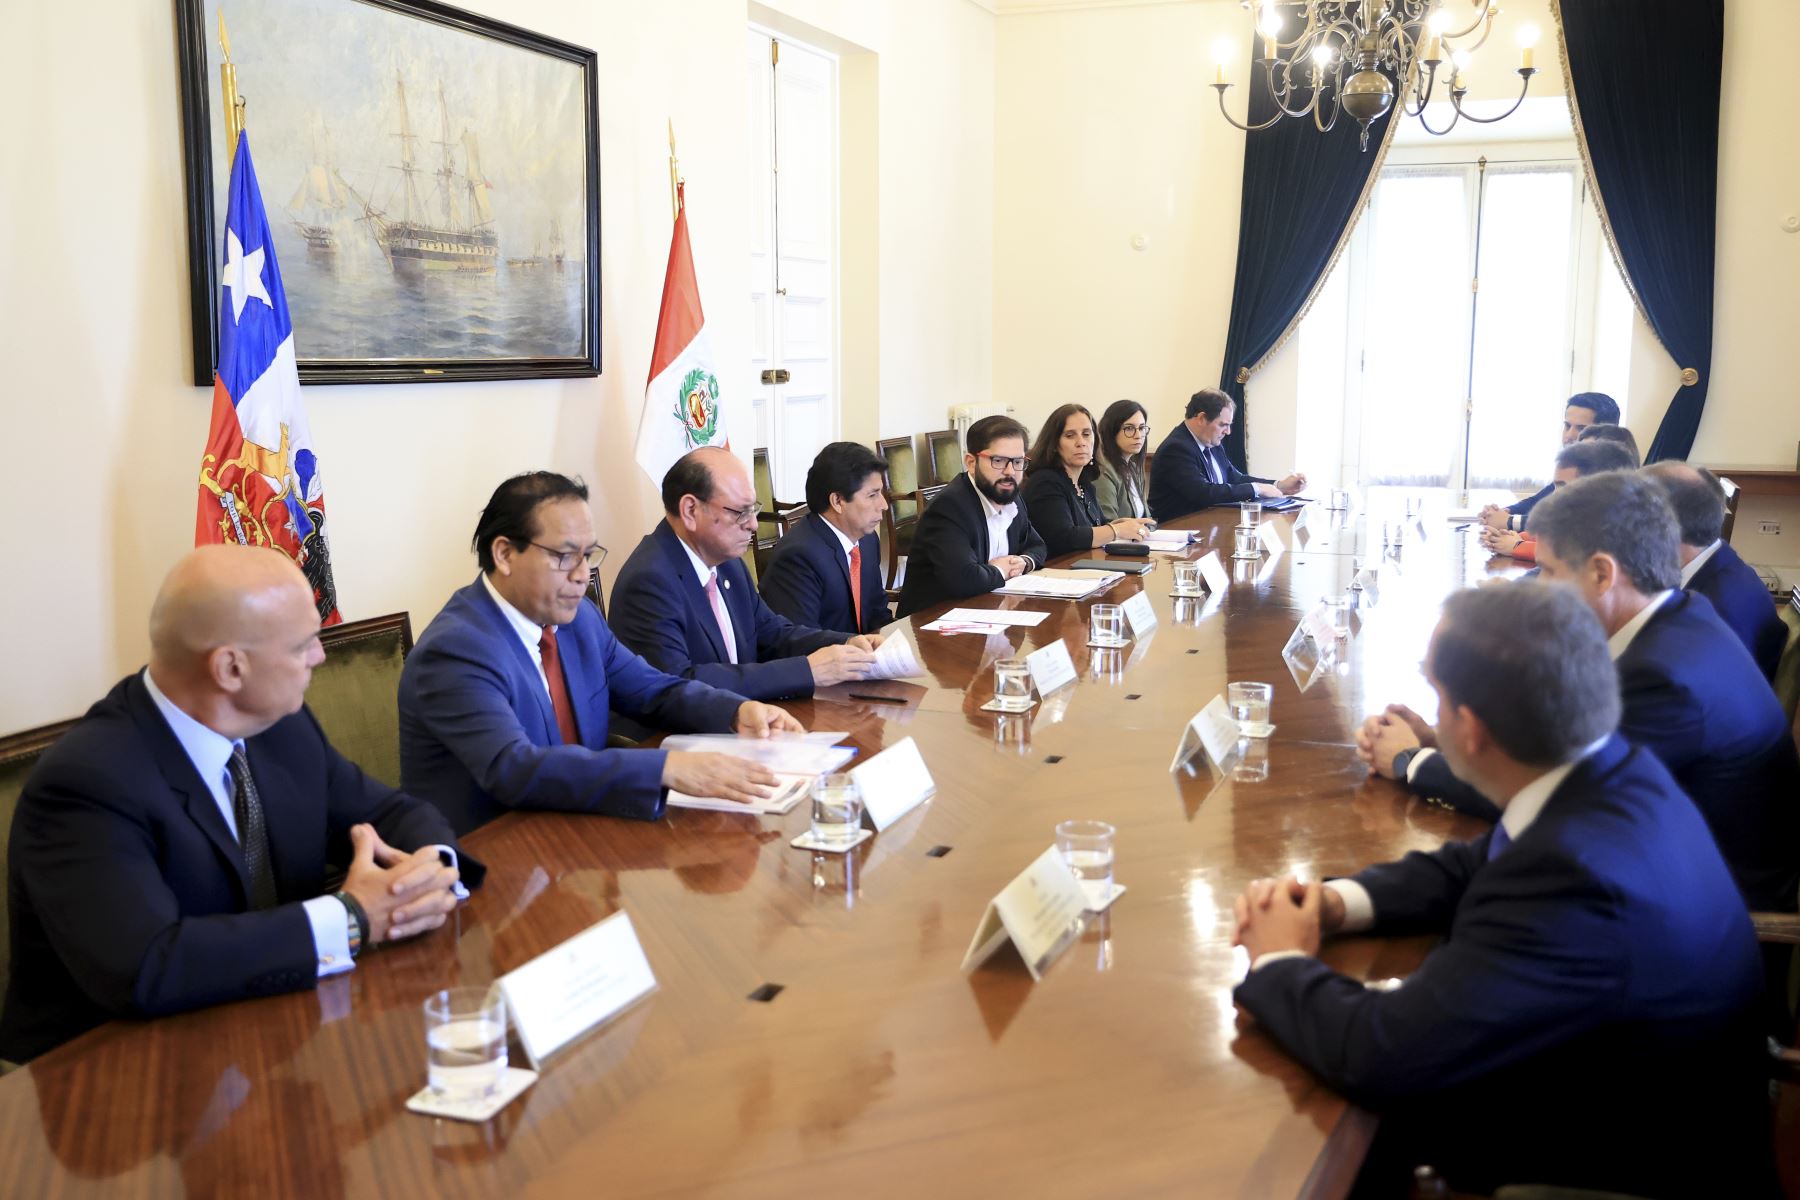 Presidente Pedro Castillo Terrones se reúne con representantes del Consejo Empresarial Perú-Chile.

Foto:ANDINA/Presidencia